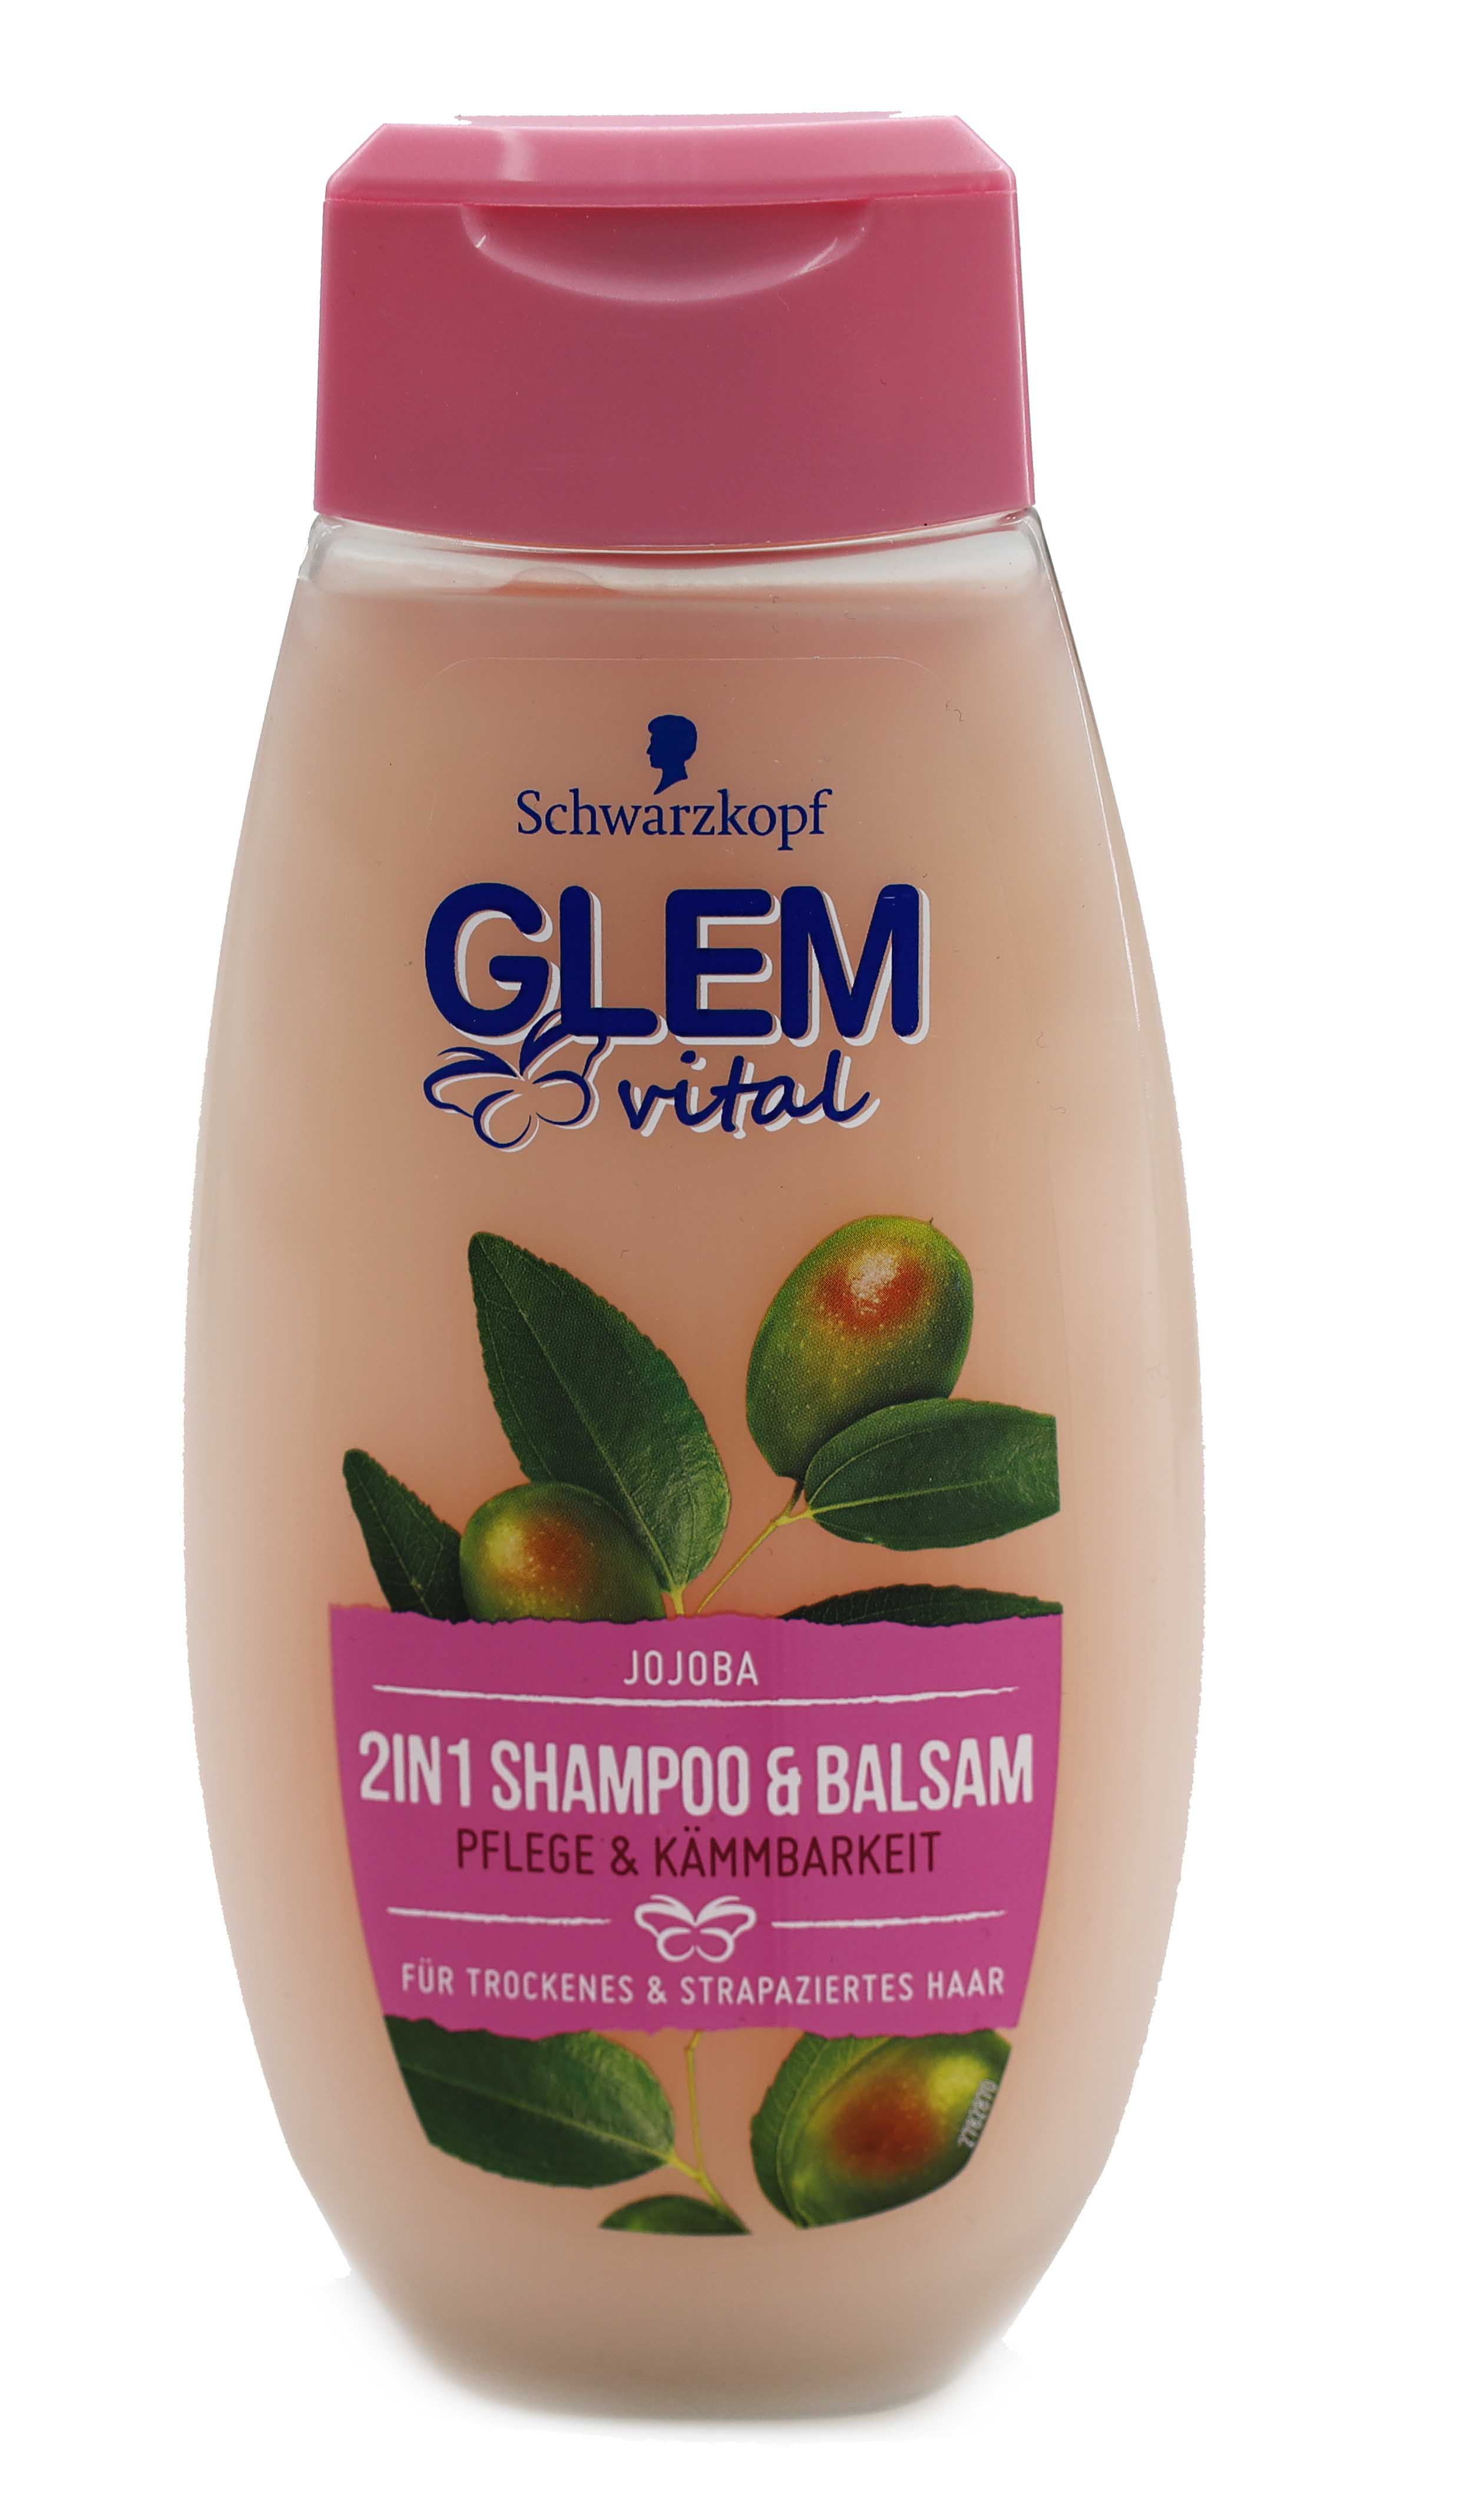 Glem vital 2in1 Shampoo & Balsam Jojoba 350ml